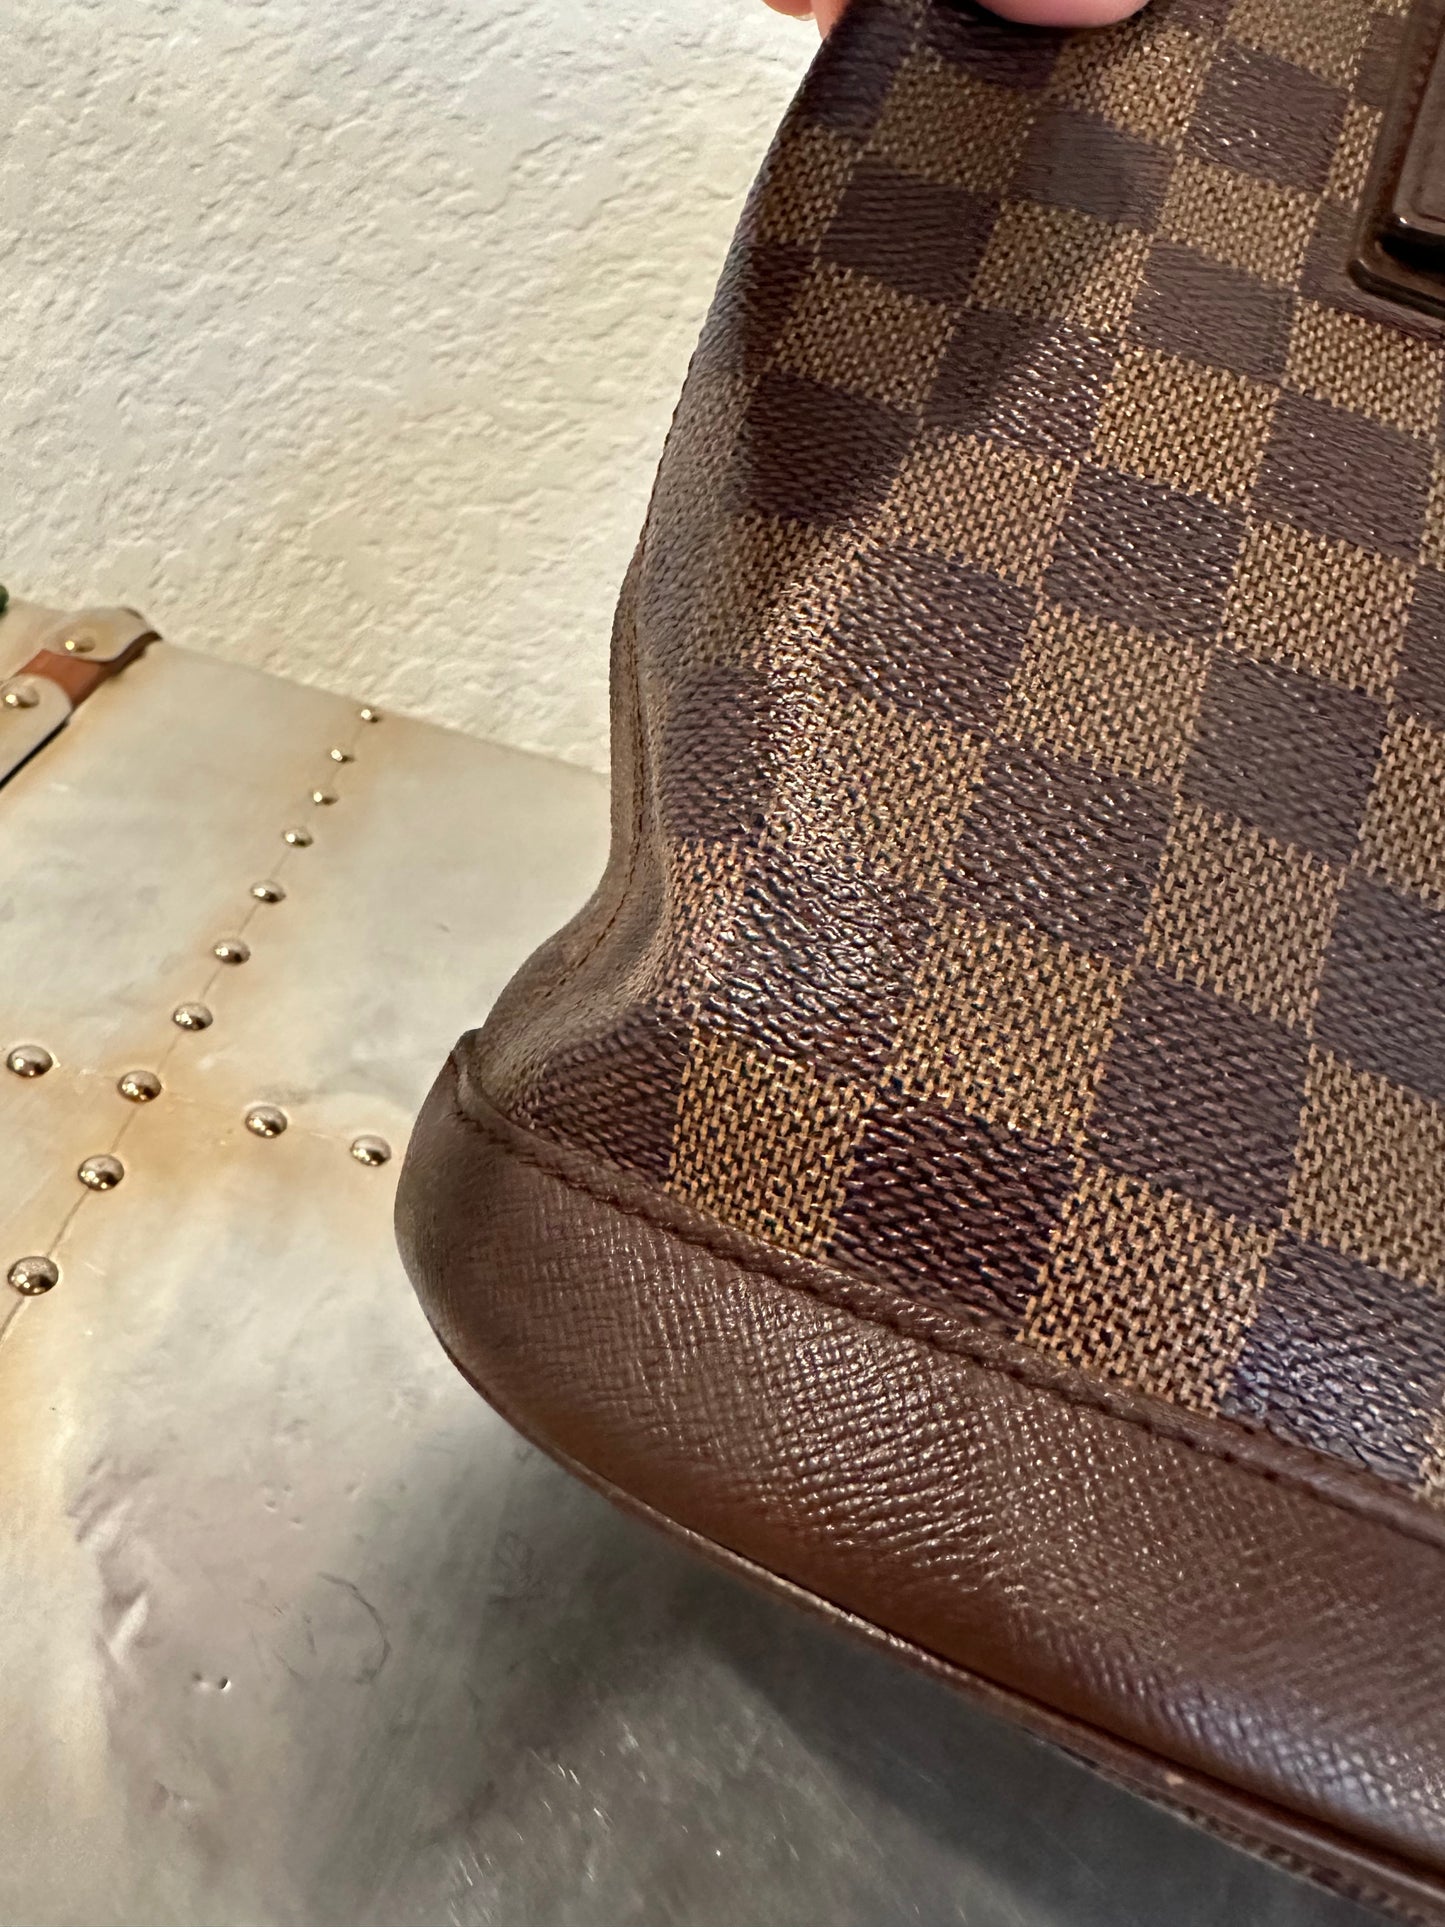 Pre-owned Authentic Louis Vuitton Bucket Damier Ebene Shoulder Bag